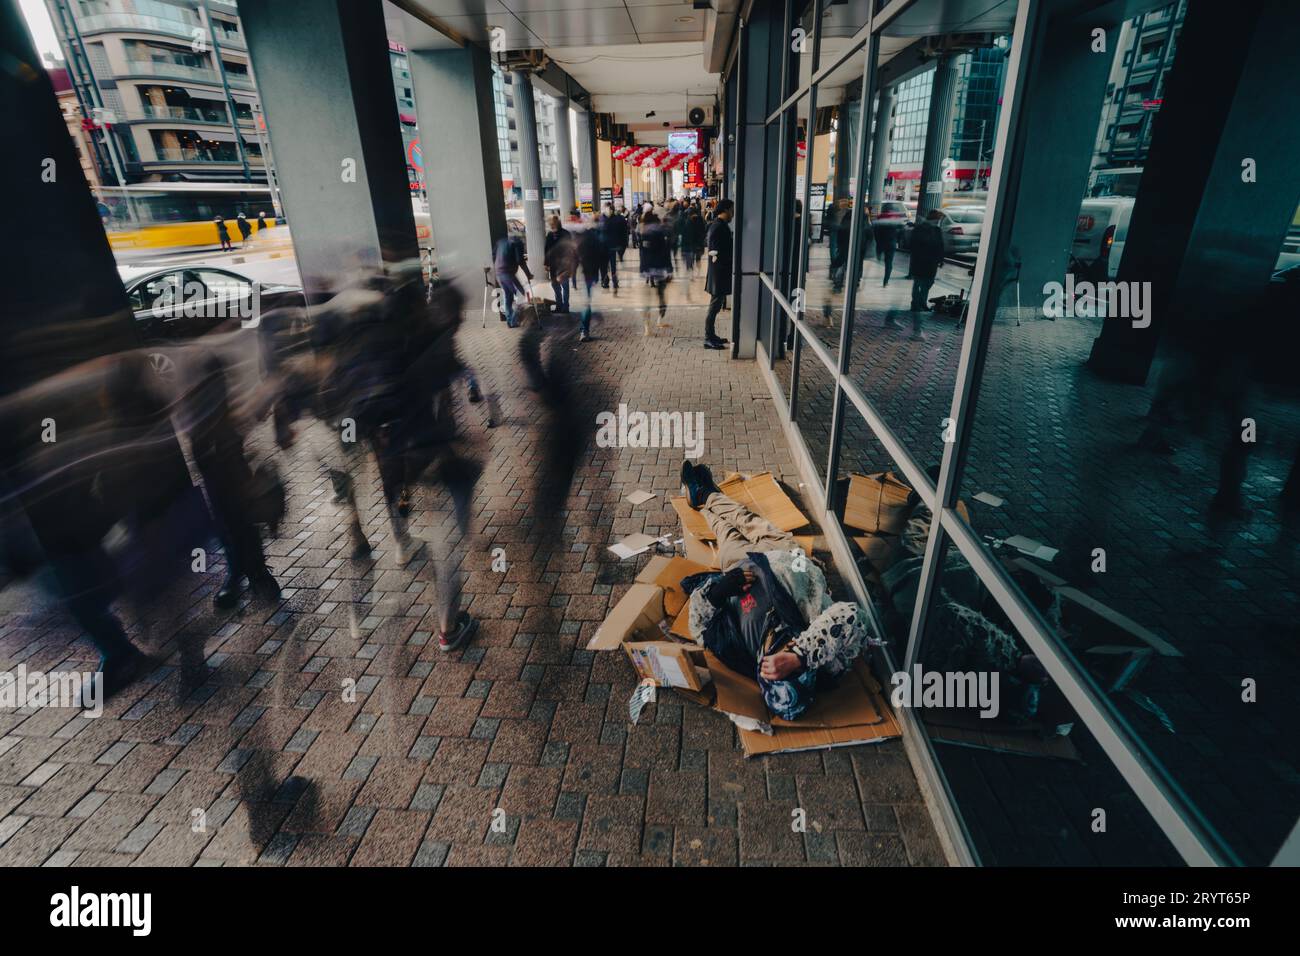 Eine obdachlose Person, die draußen auf dem Boden liegt und in einem Notstand ist, mit vorbeiziehenden Menschen Stockfoto